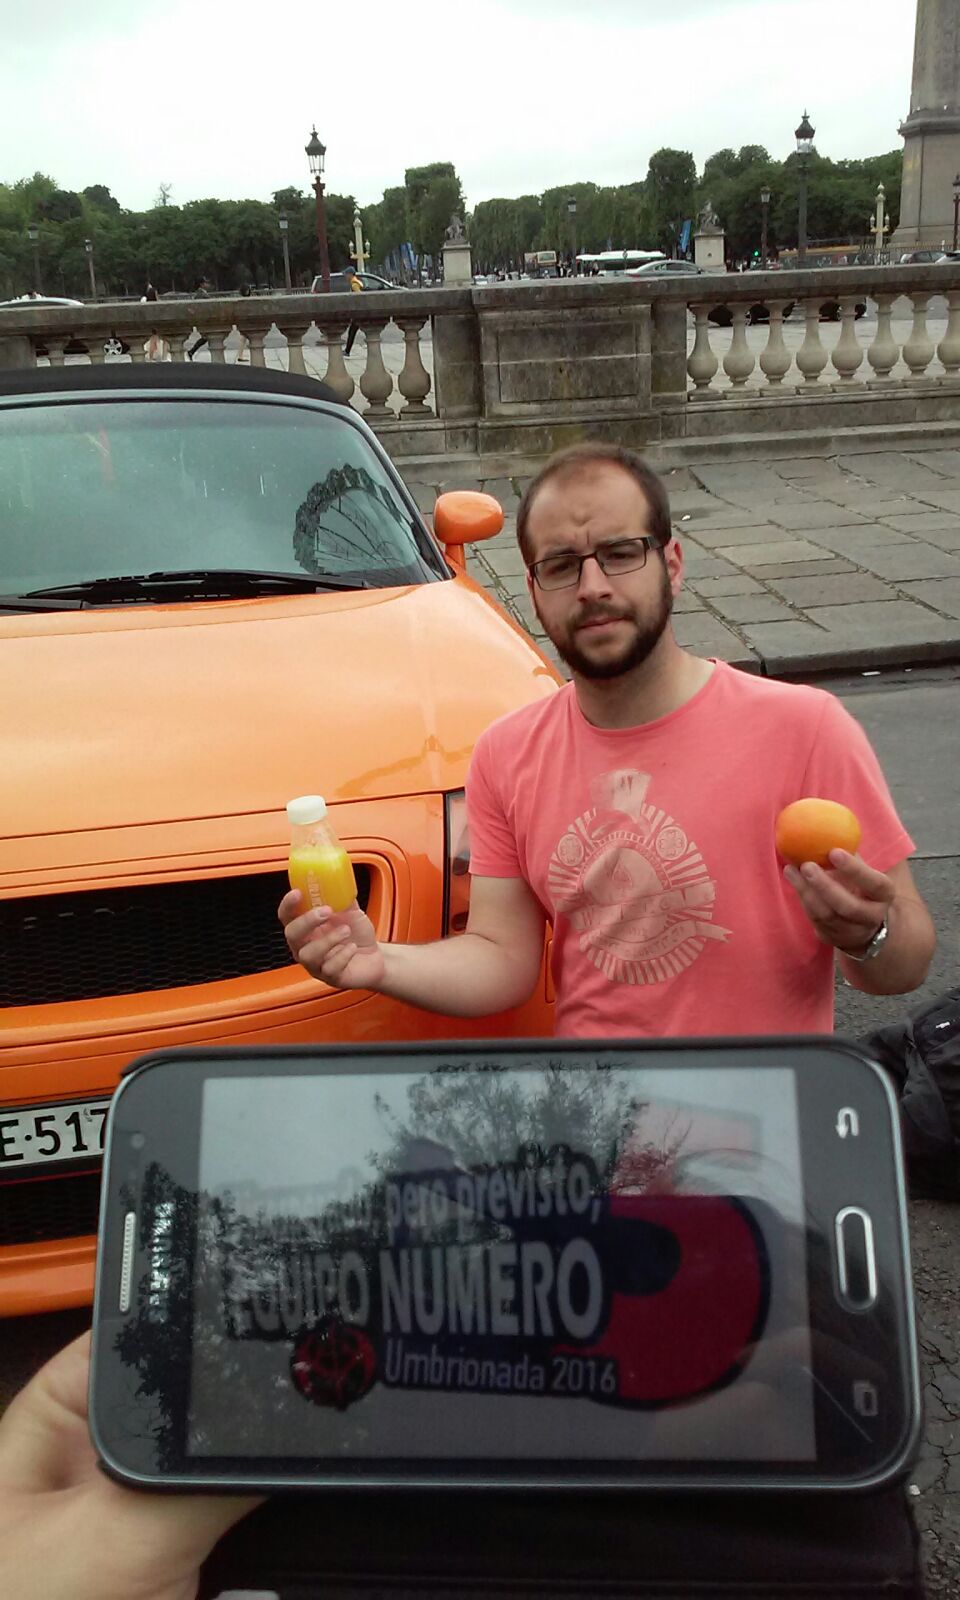 98. Junto a un coche naranja, vestido de color naranja, con una mano sujetando una naranja y con la otra bebiendo zumo de naranja.